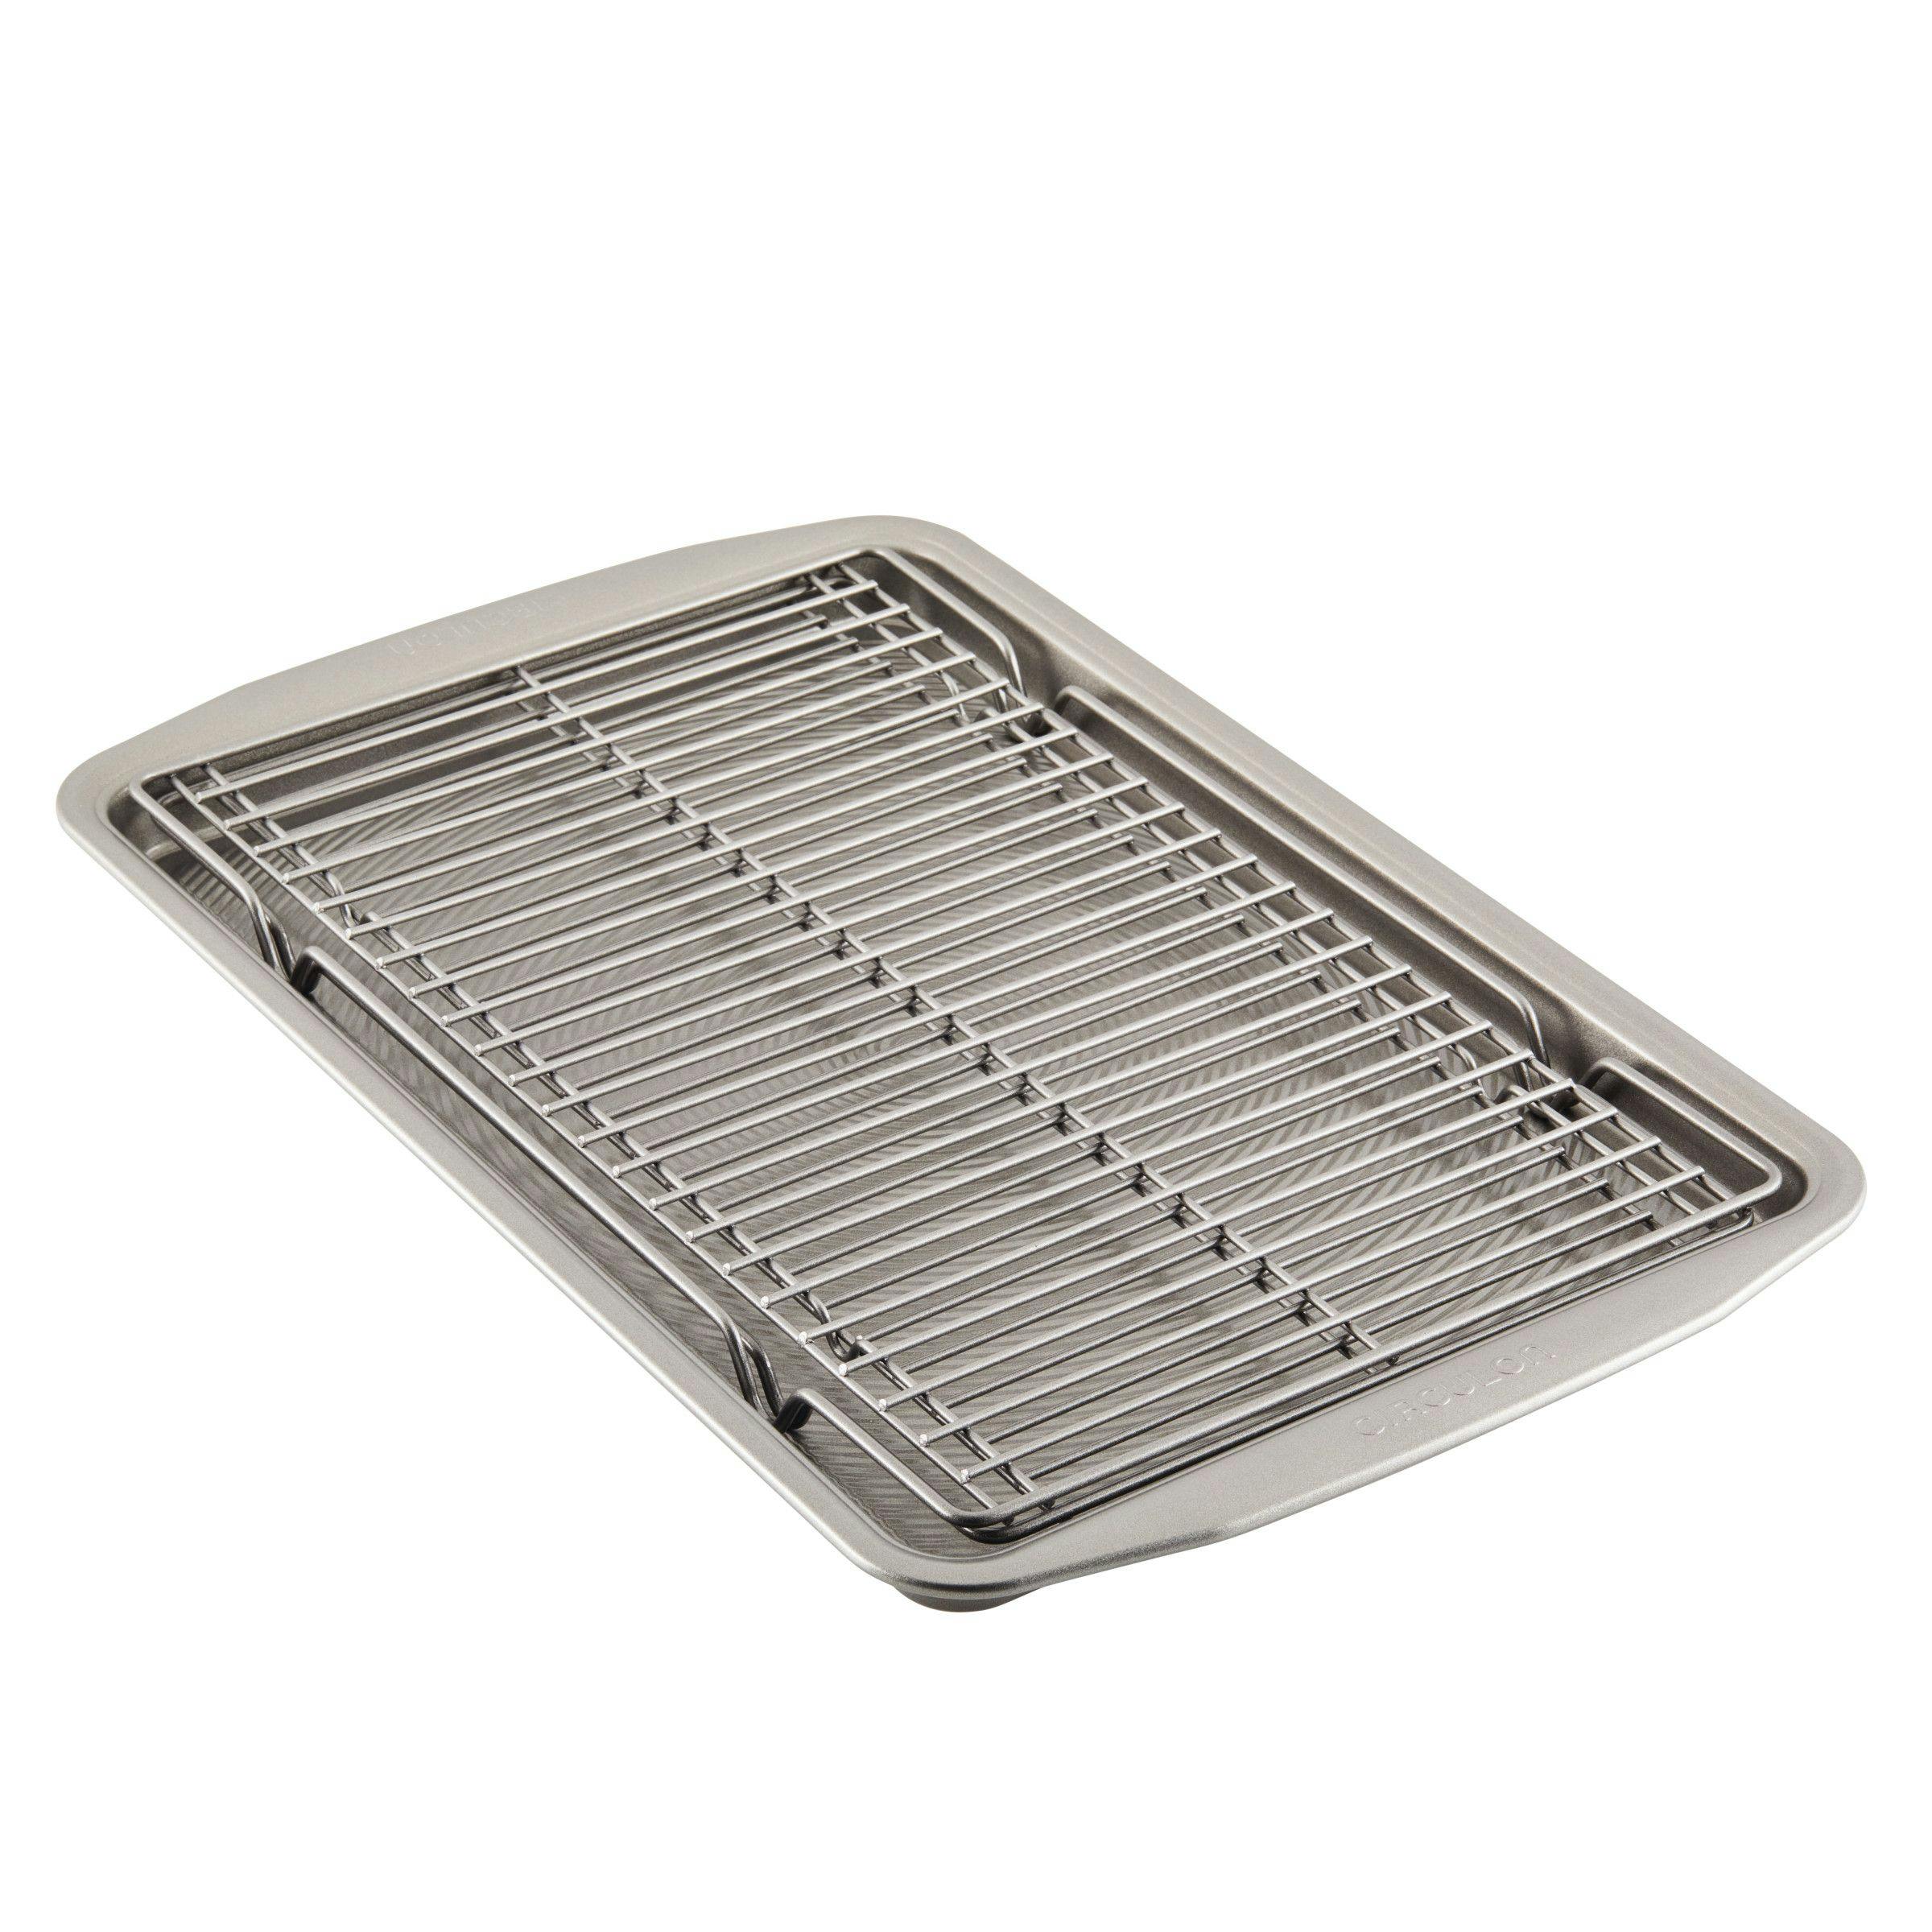 Circulon Bakeware 11 x 17-in Baking Sheet Pan and Cooling Rack Set, 3-Piece, Silver